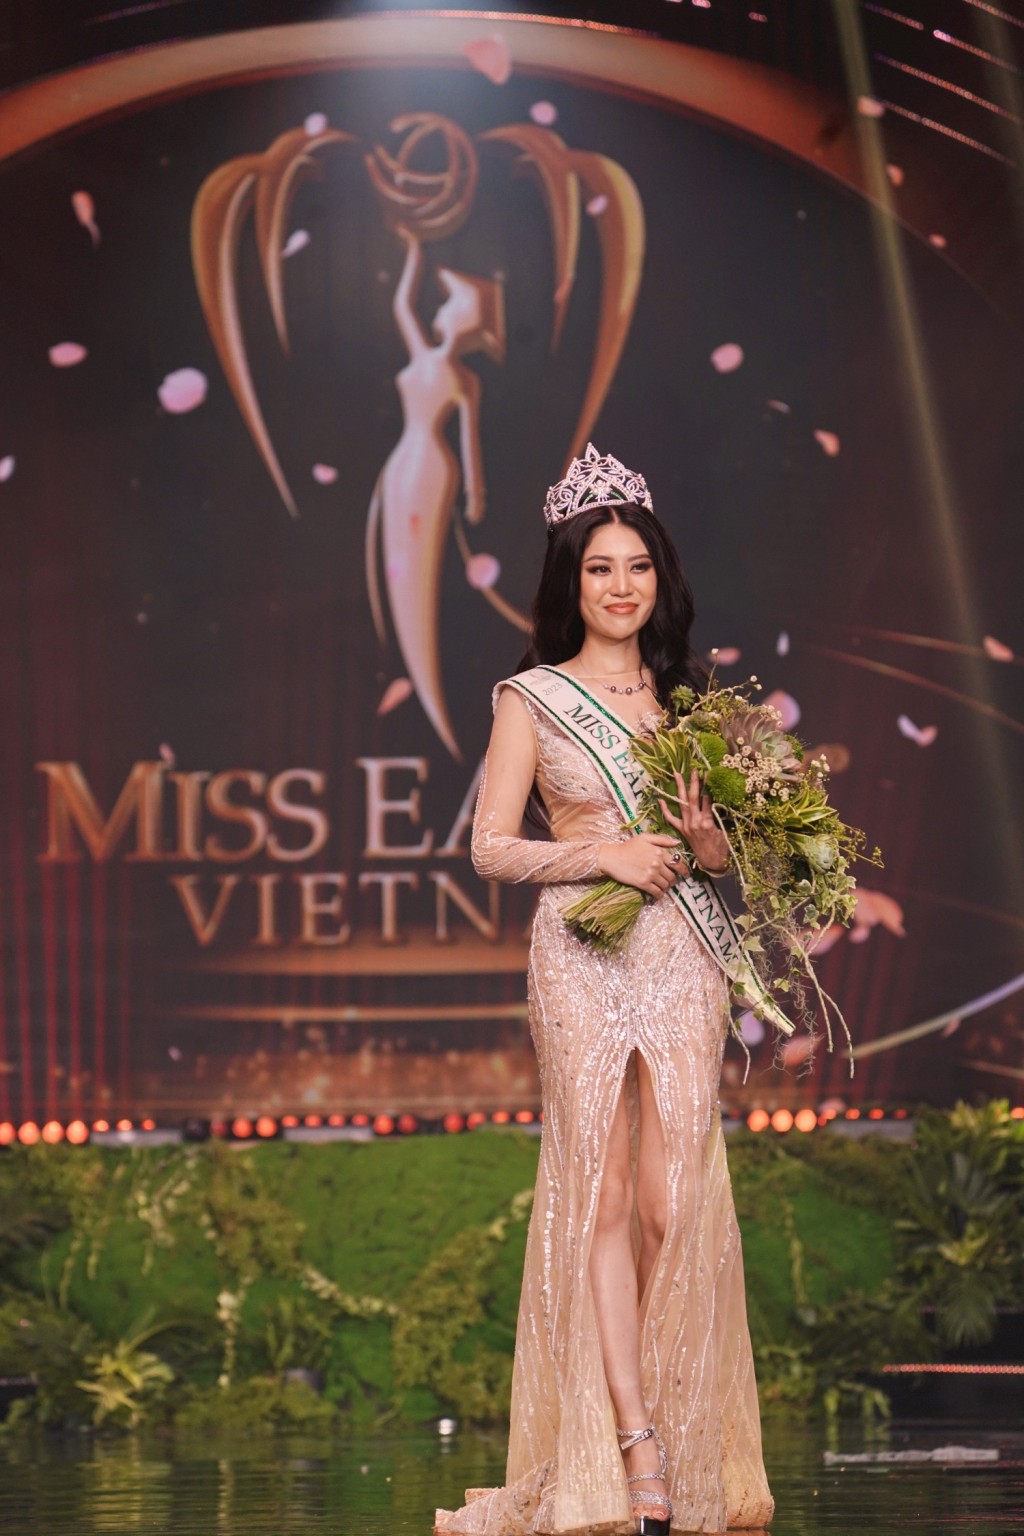 Đỗ Thị Lan Anh cũng sẽ là gương mặt đại diện của Việt Nam để tham dự Miss Earth quốc tế 2023 sẽ diễn ra tại Việt Nam vào tháng 12/2023